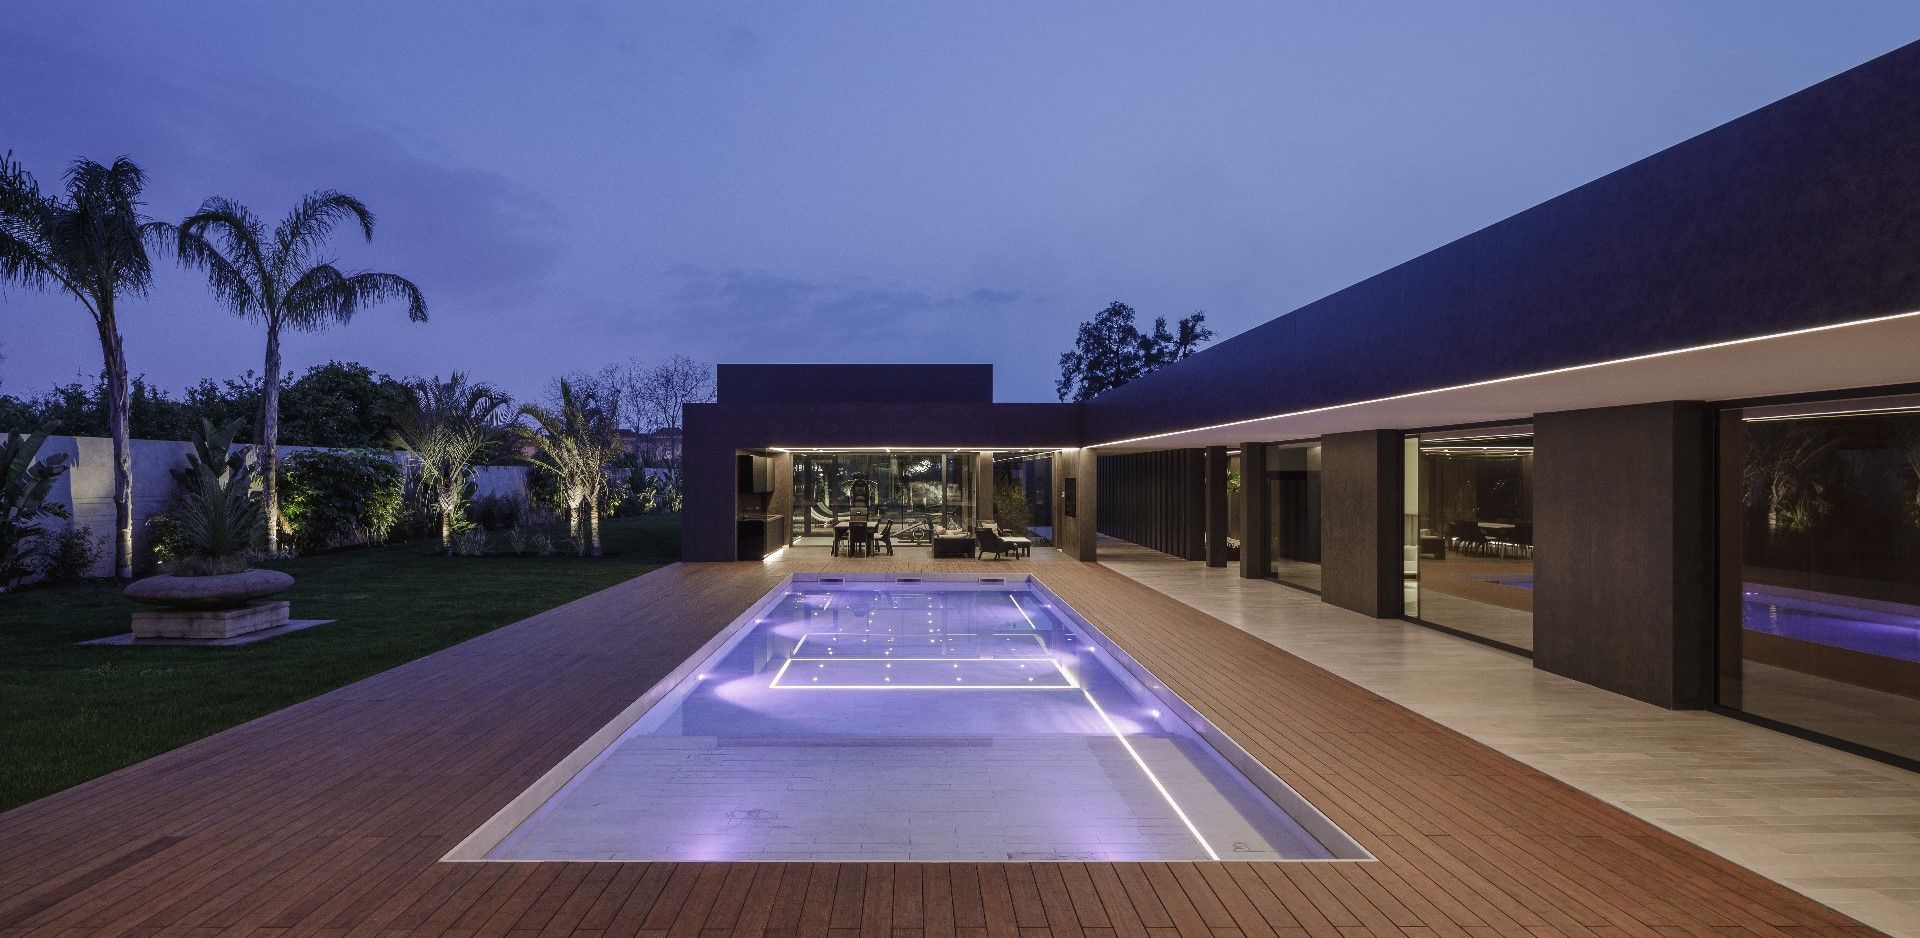 Casa de La Libertad proyecto by Living Kits piscina exterior noche